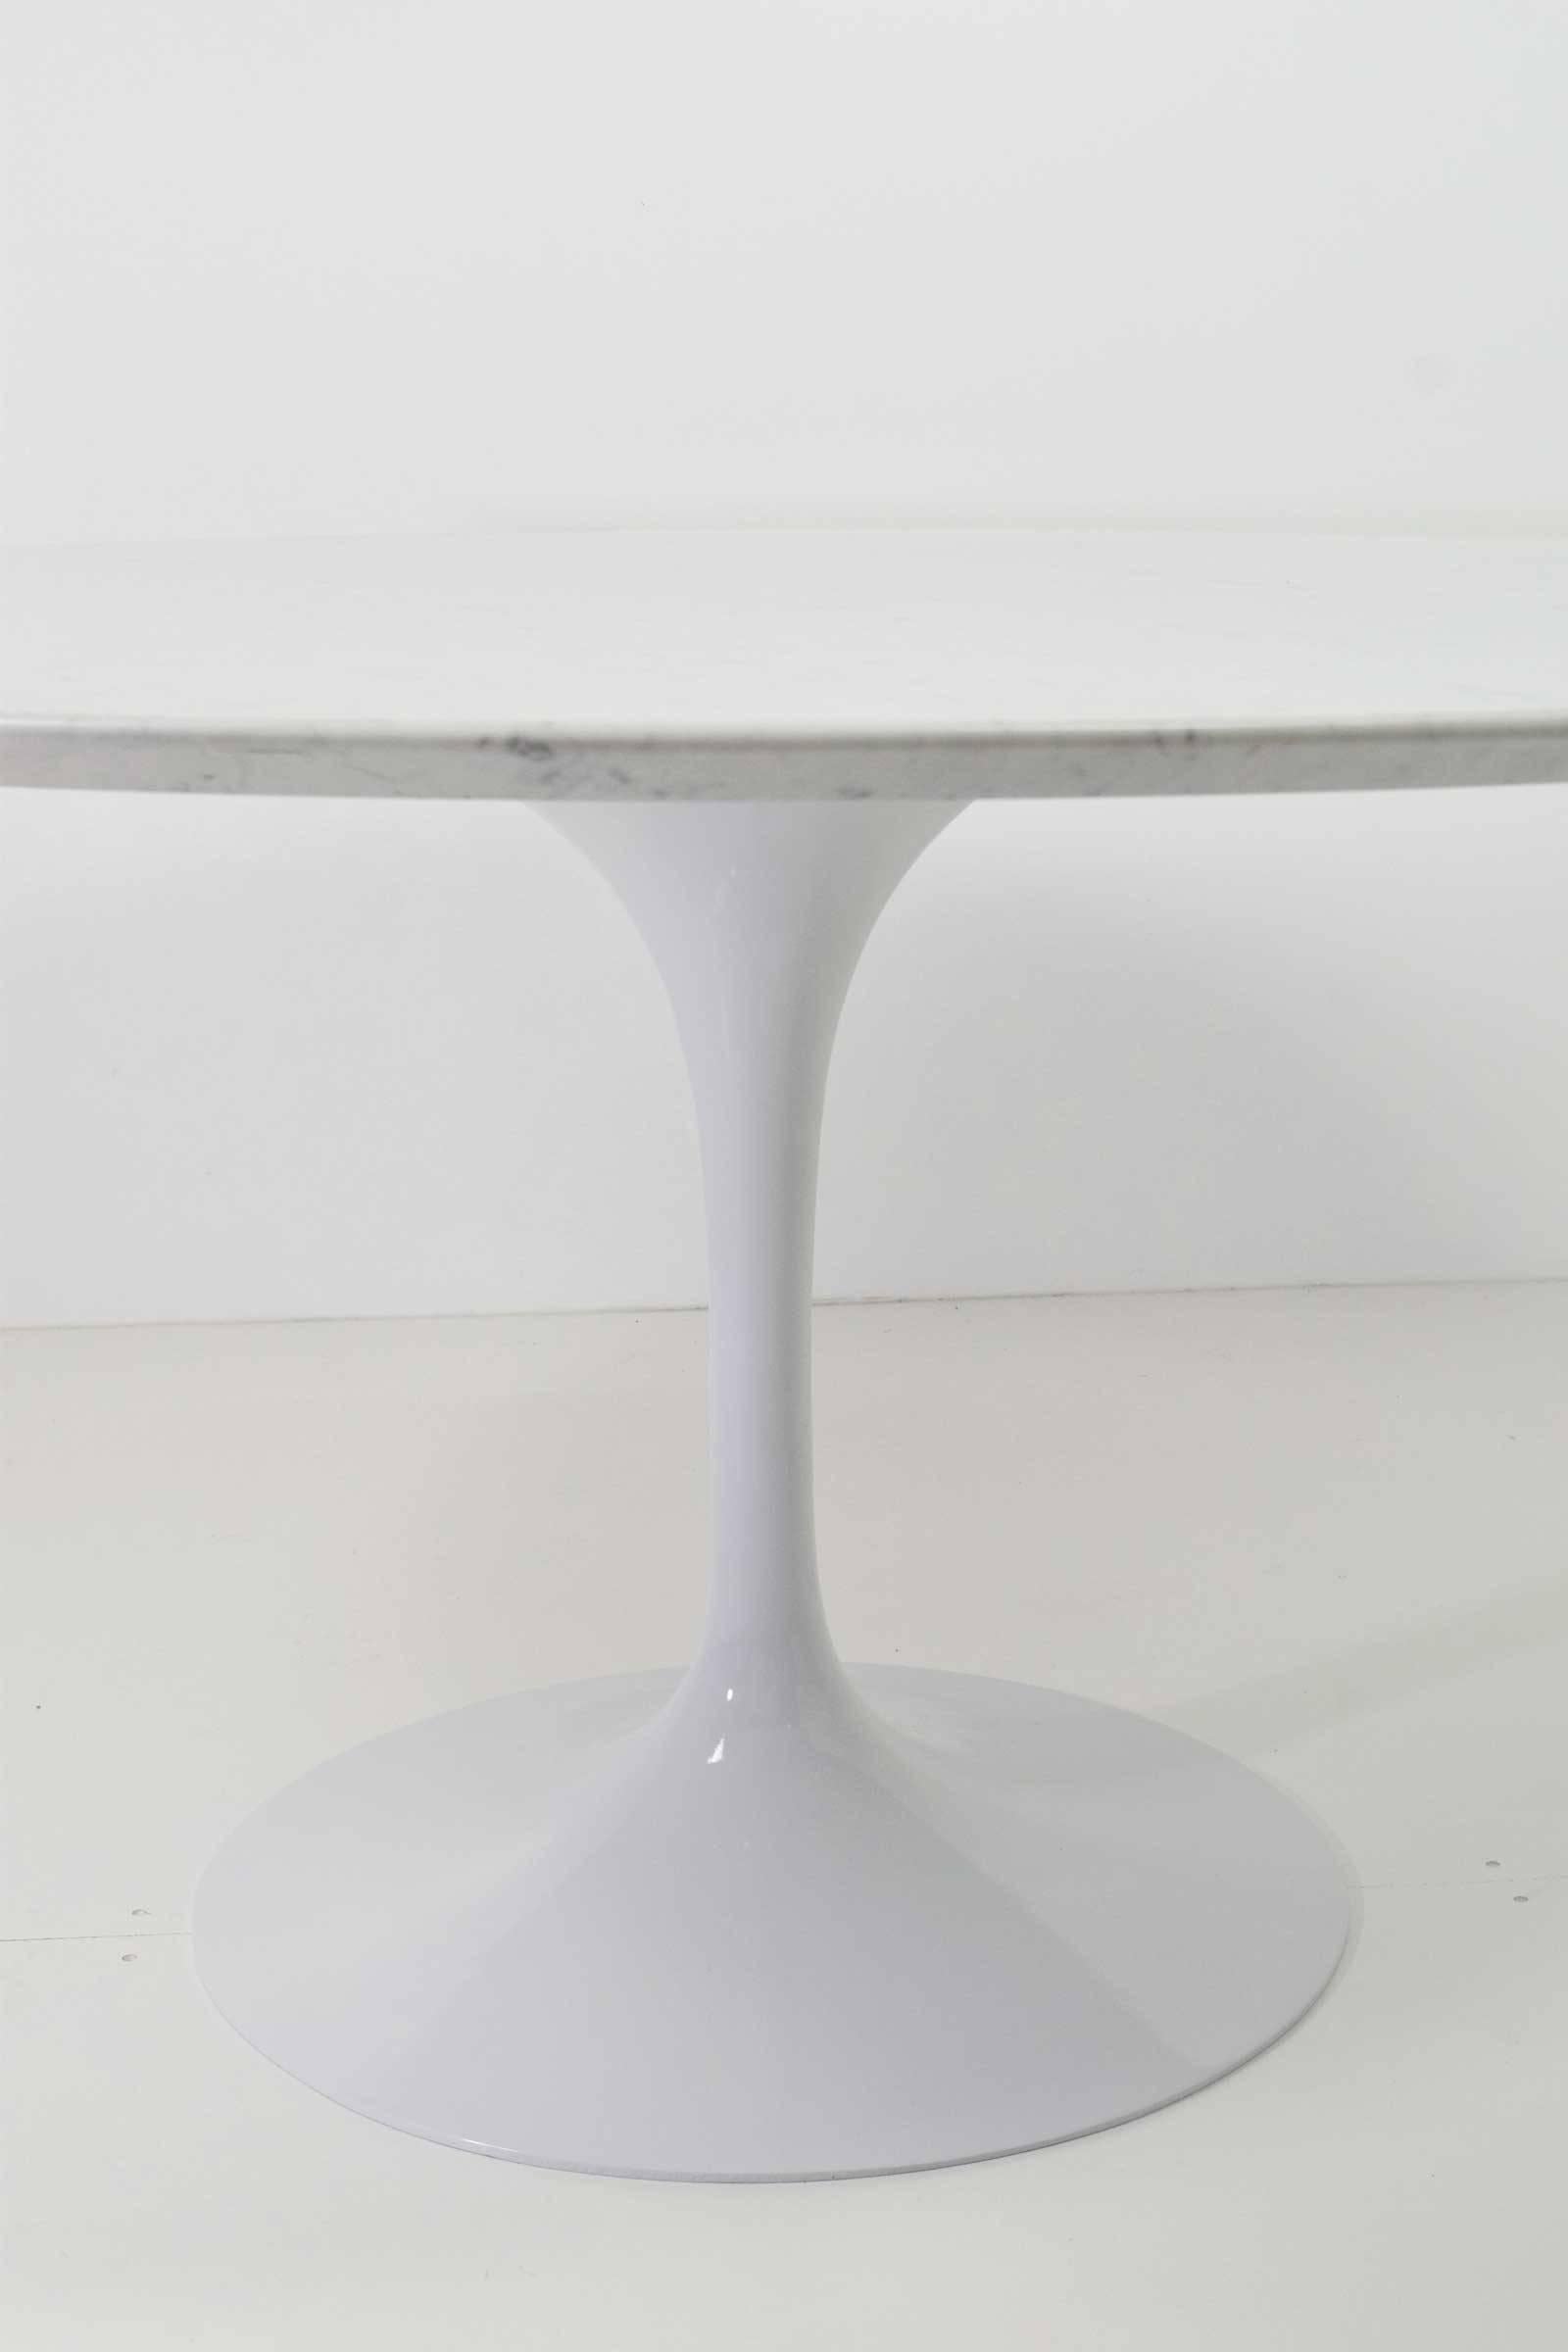 Italian Eero Saarinen for Knoll Tulip Table with Carrara Marble Top